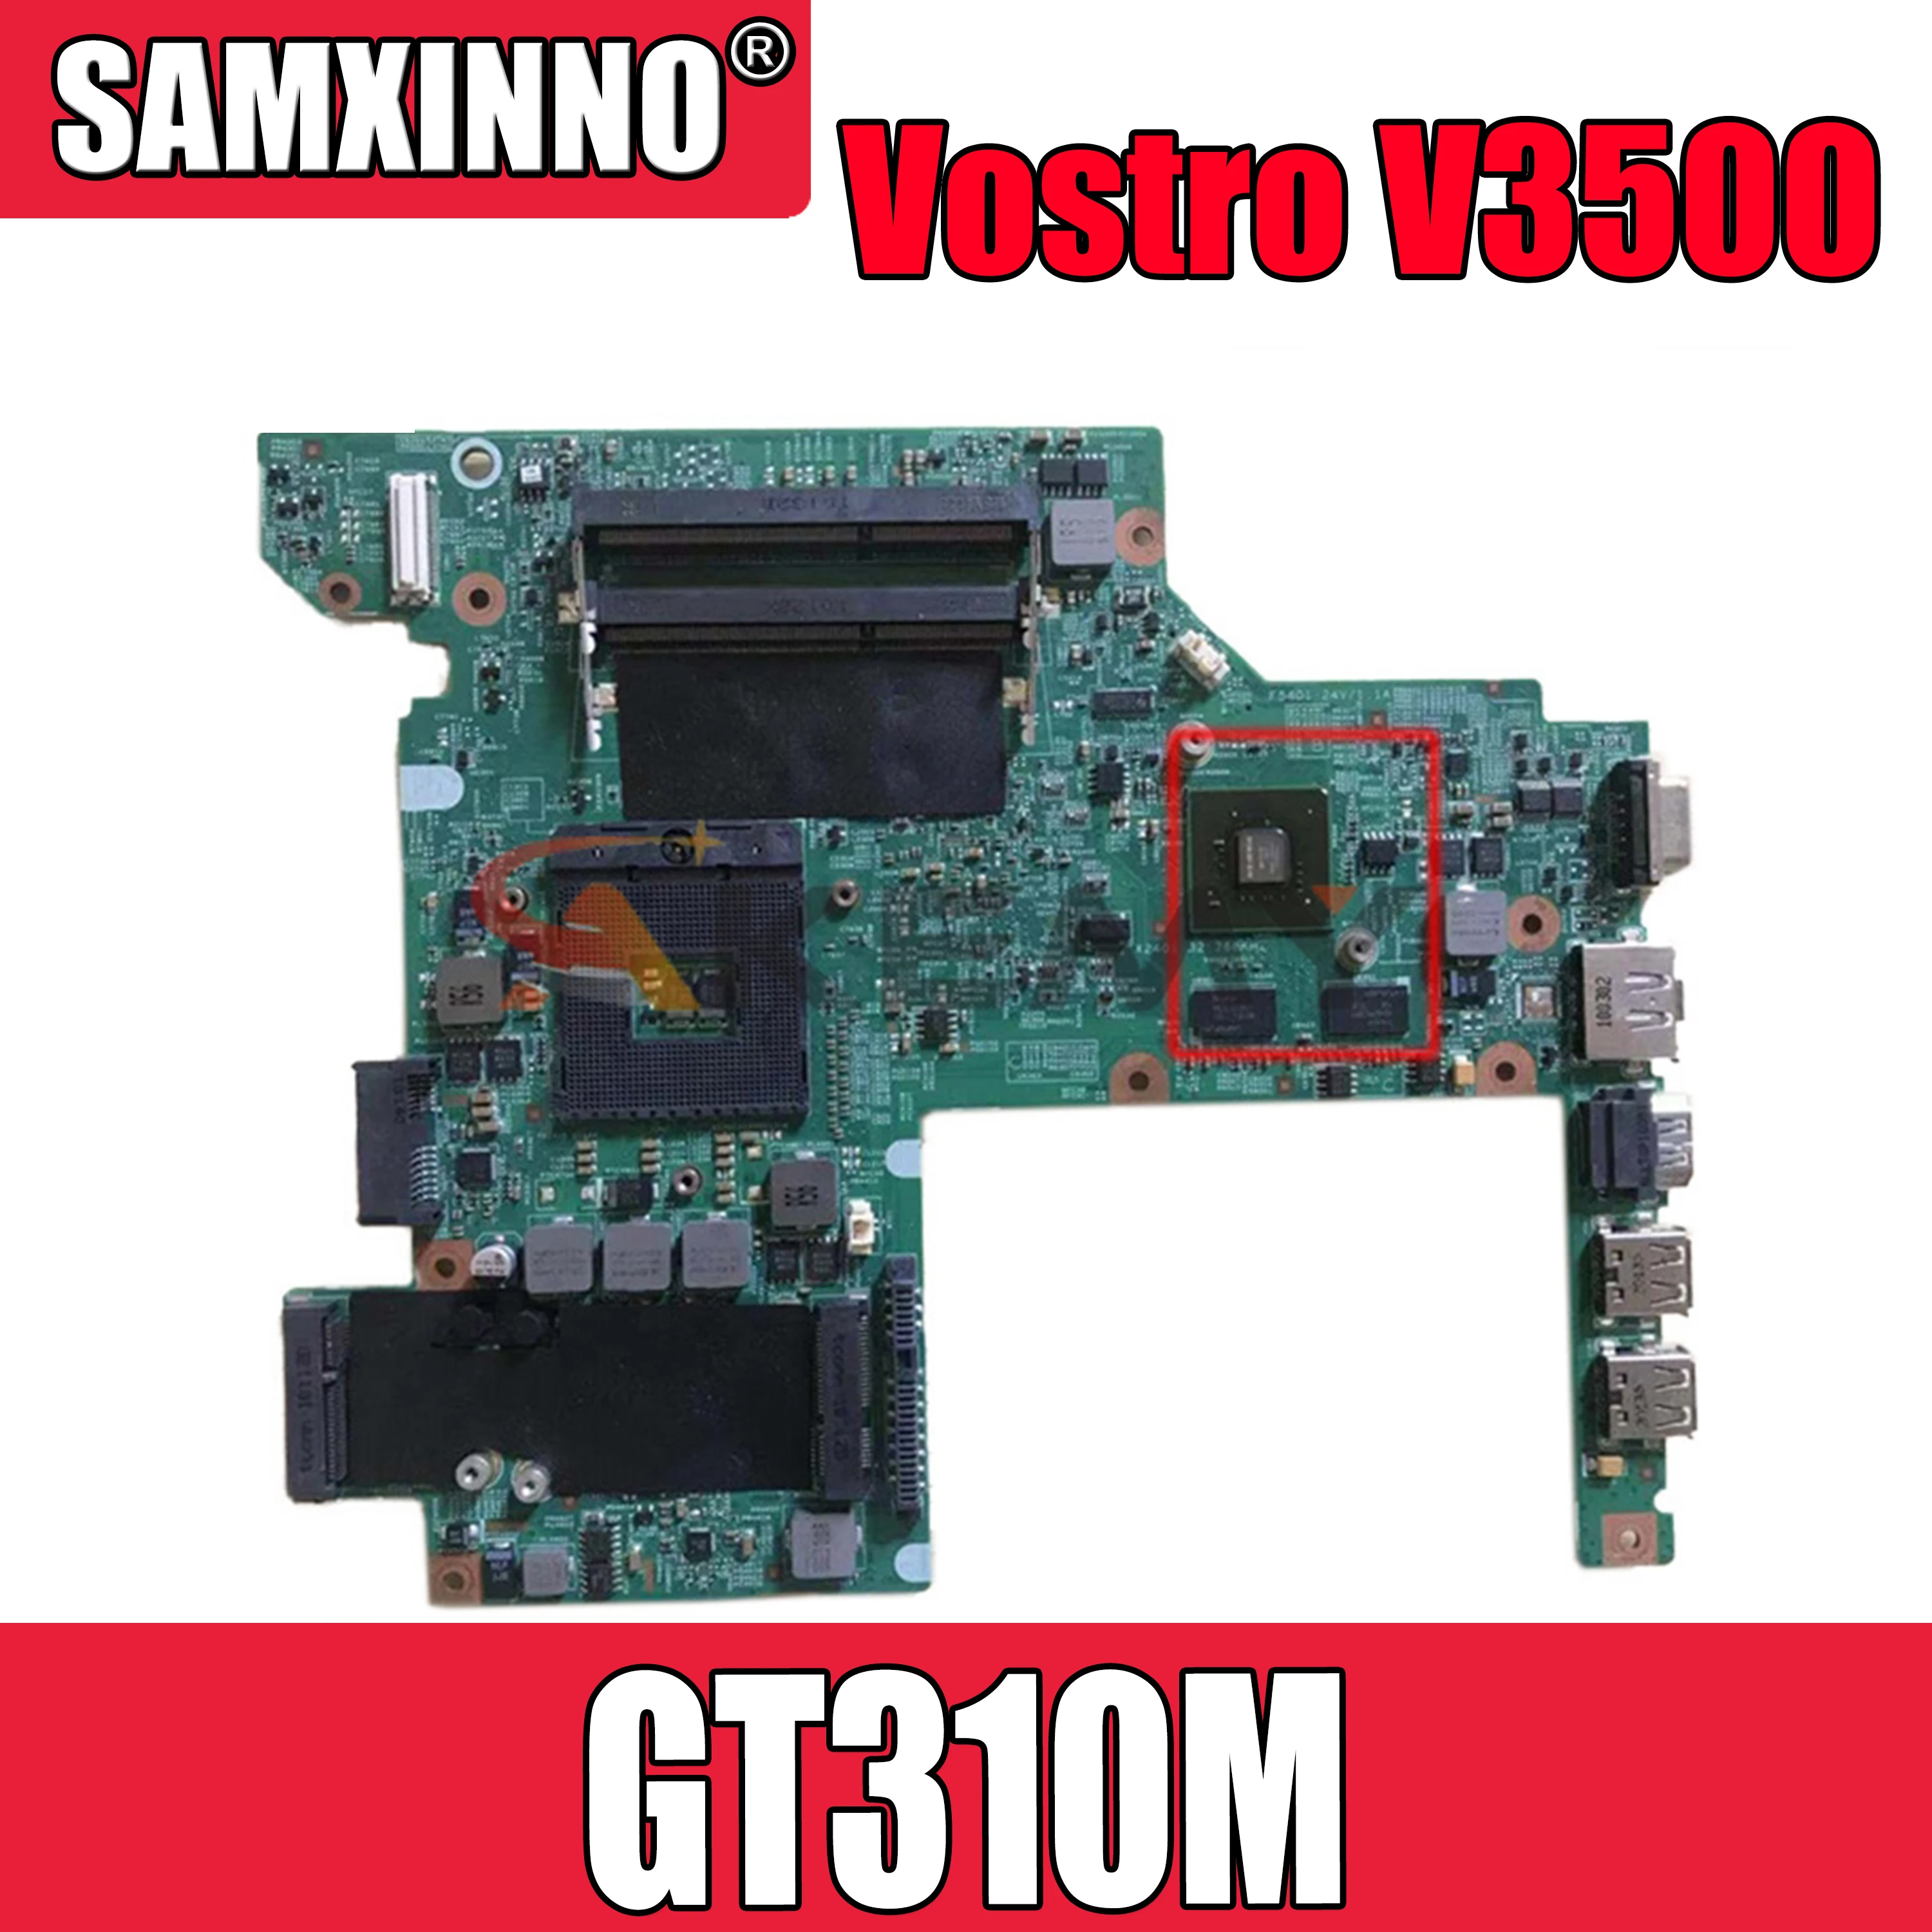 Sākotnējā Portatīvo datoru mātesplati Par DELL Vostro V3500 3500 GT310M Mainboard KN-0W79X4 0W79X4 HM57 N11M-GE1-S-A3 DDR3